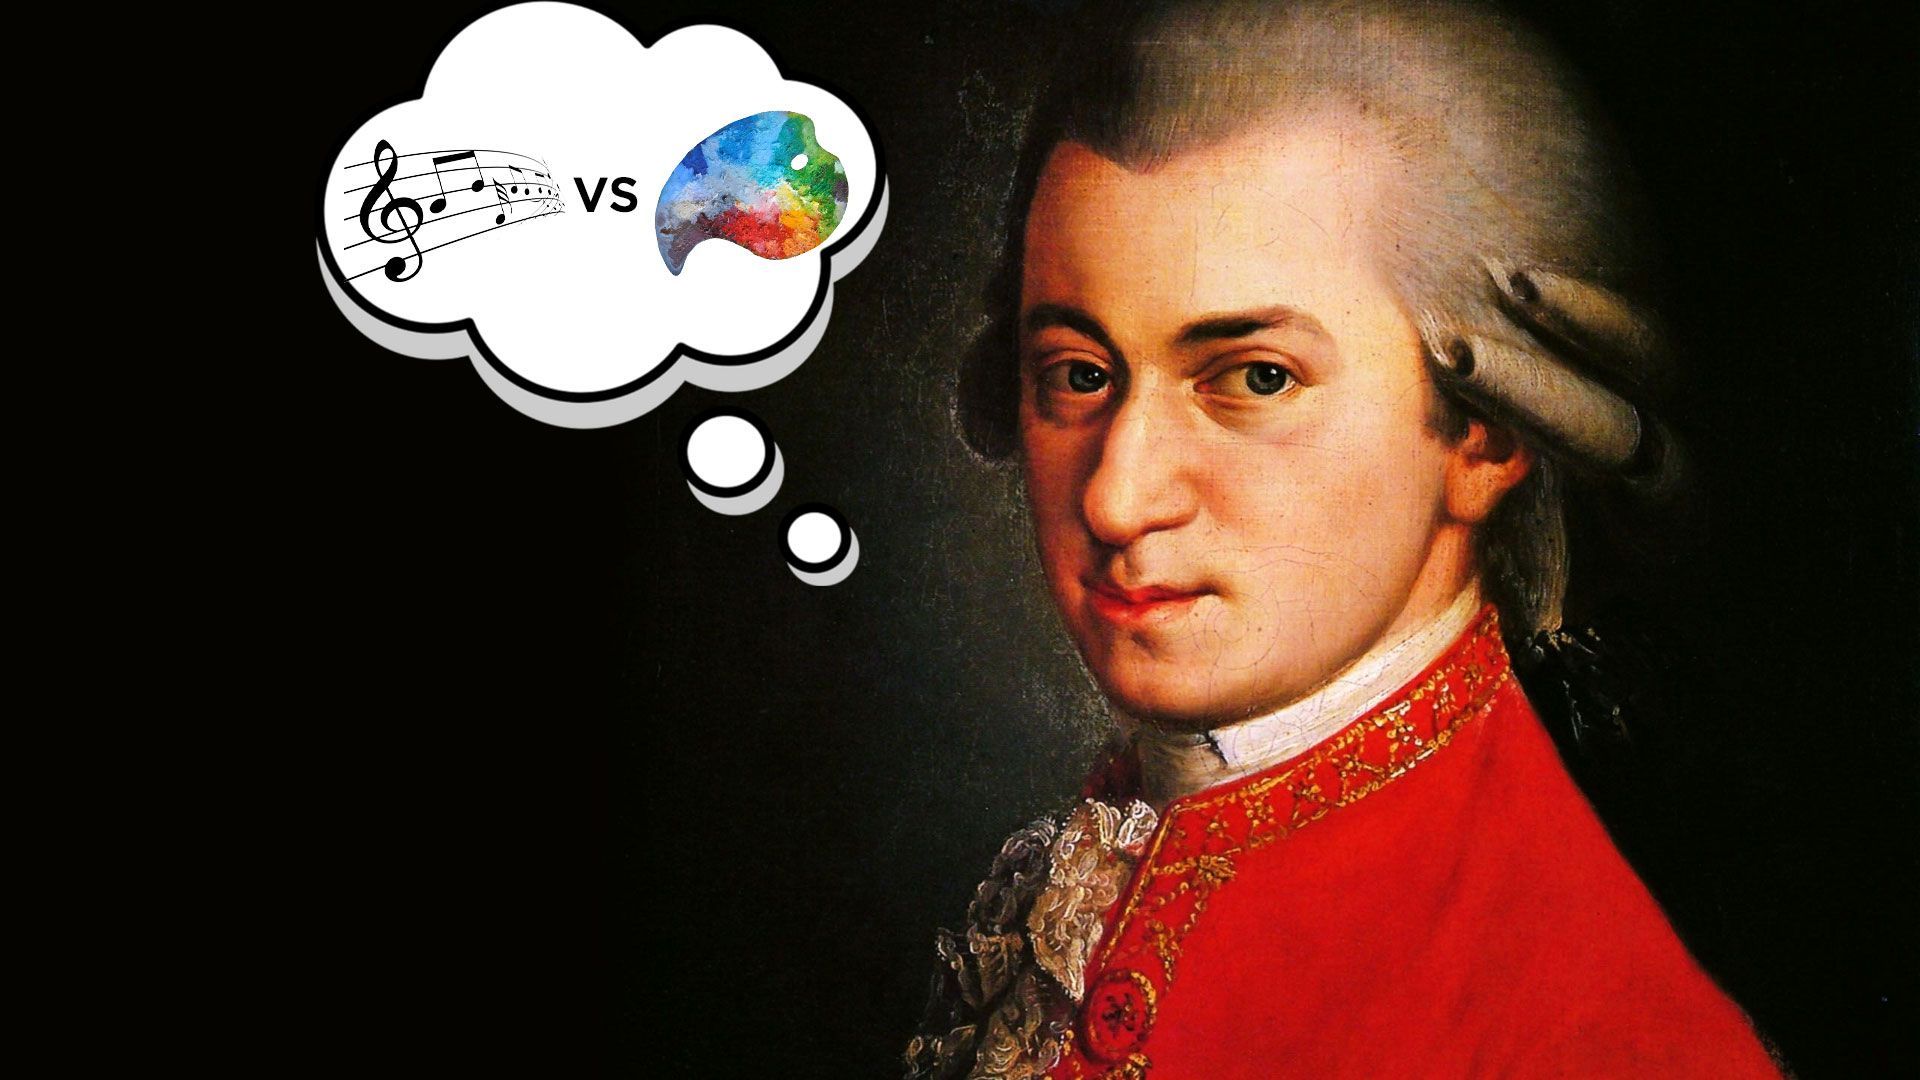 Saviez-vous que Mozart était un peintre célèbre ?